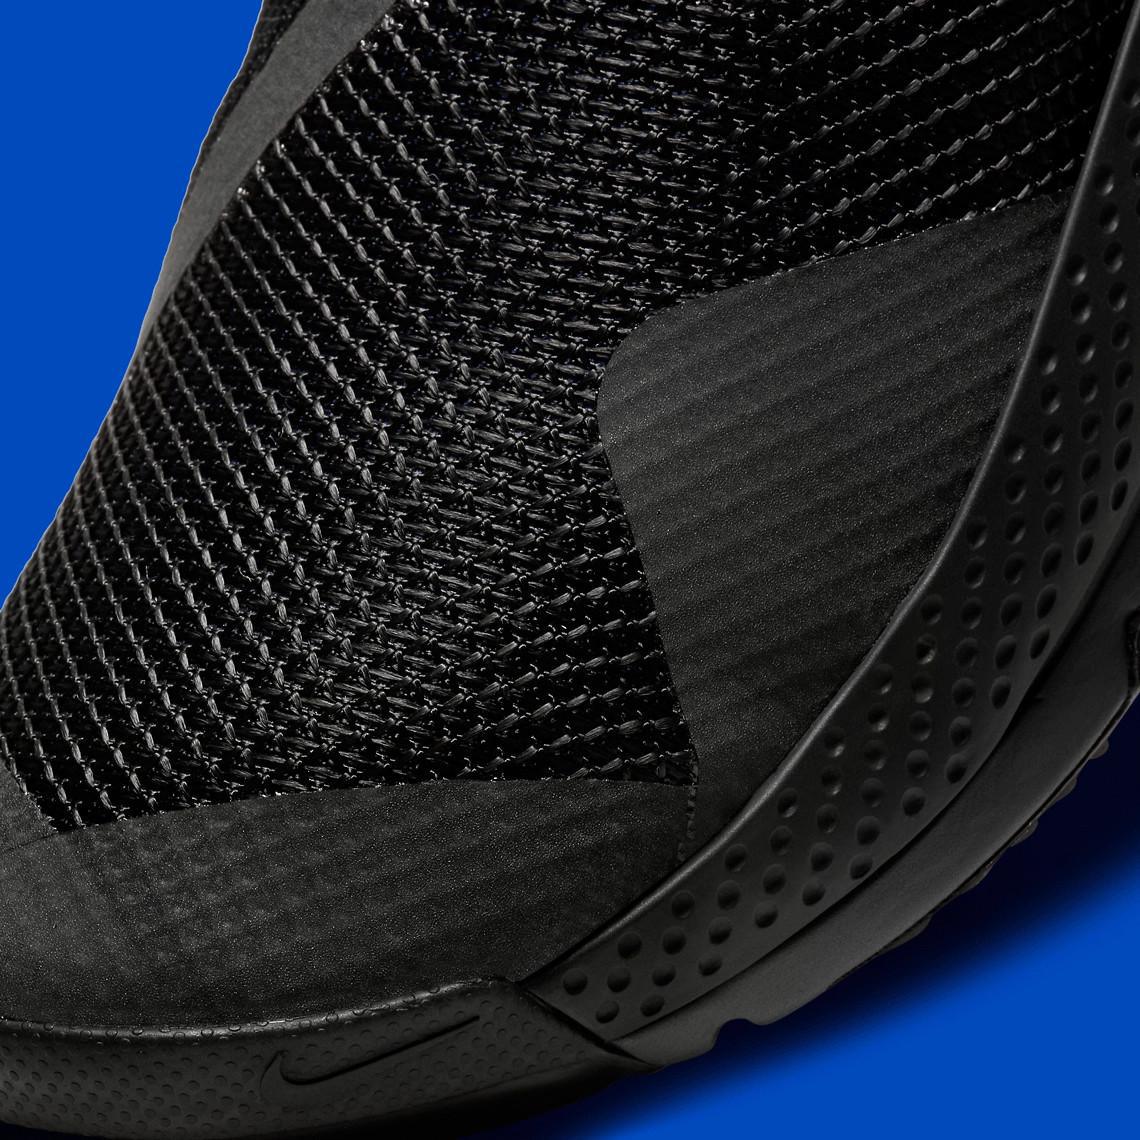 Nike dévoile officiellement la Go FlyEase, sa première véritable chaussure mains libres